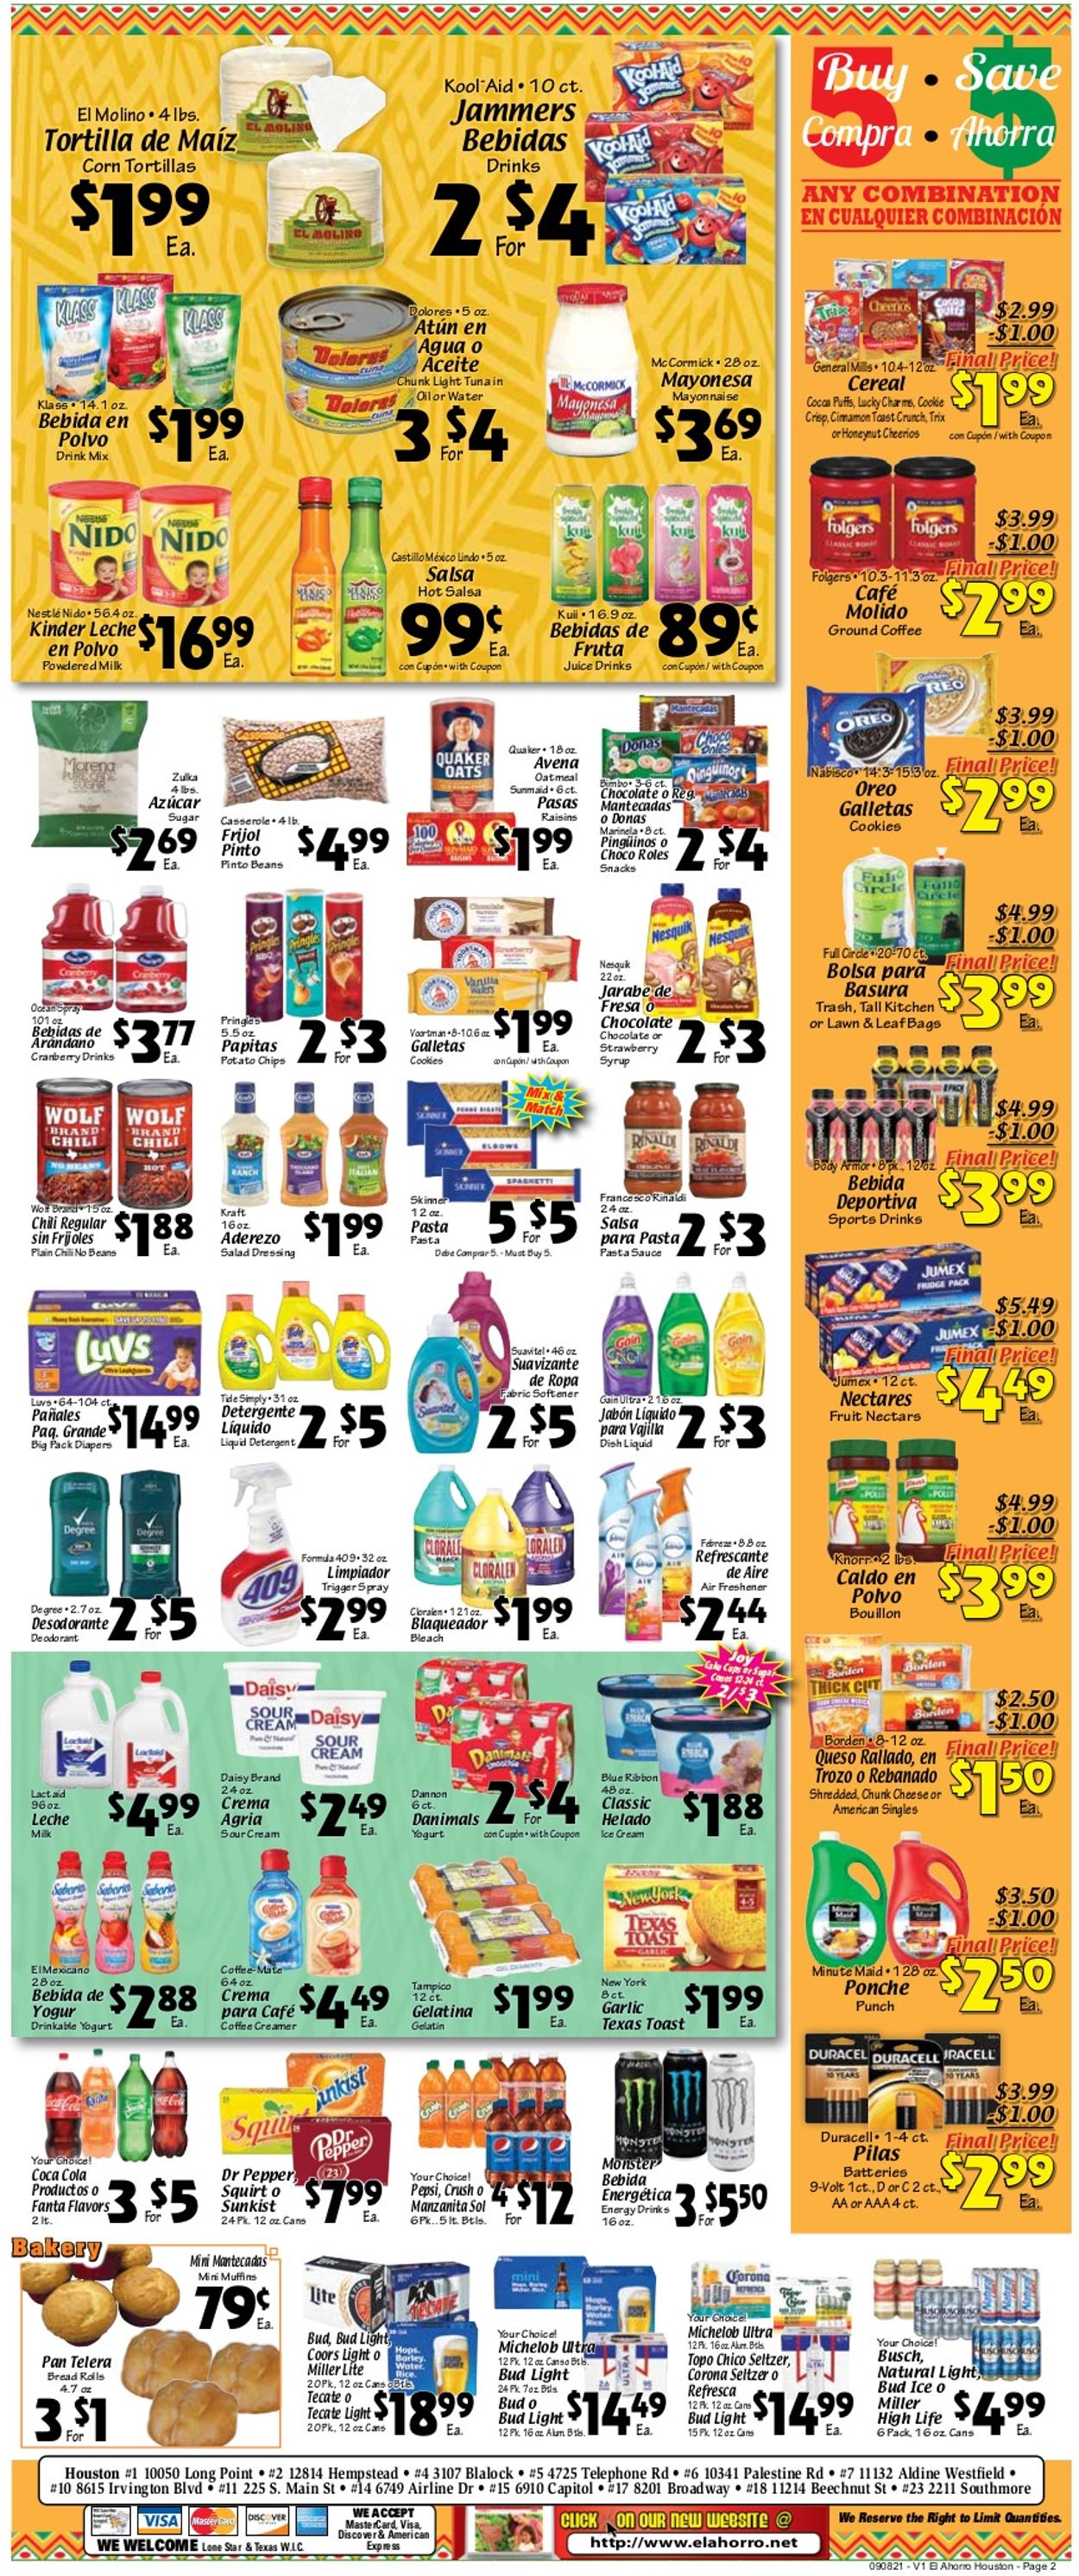 El Ahorro Supermarket Weekly Ad Circular - valid 09/08-09/14/2021 (Page 2)